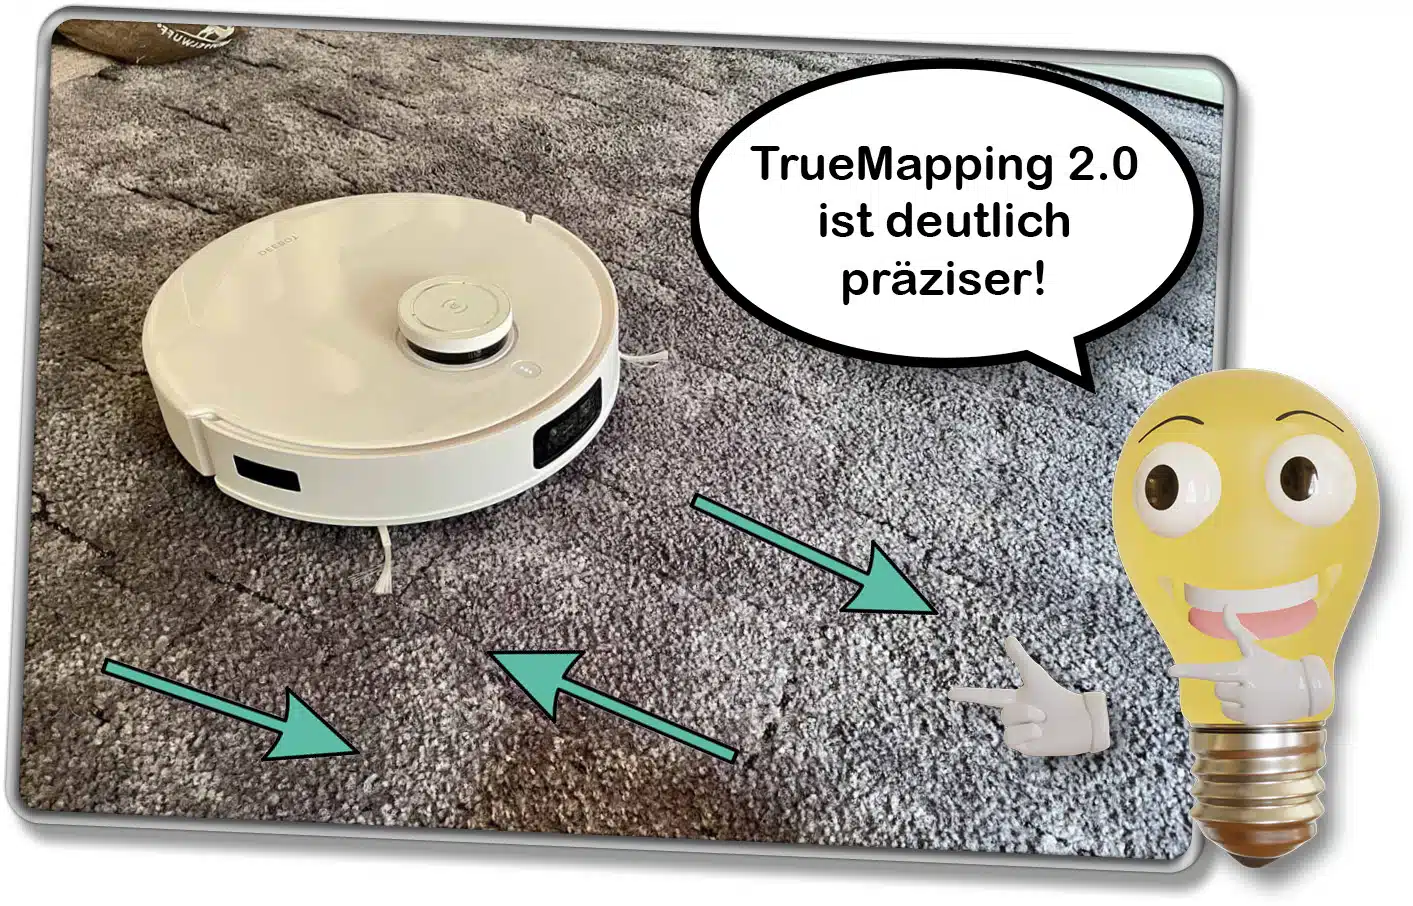 Die neue Navigationstechnologie TrueMapping 2.0 ist viel präziser als der Vorgänger. 